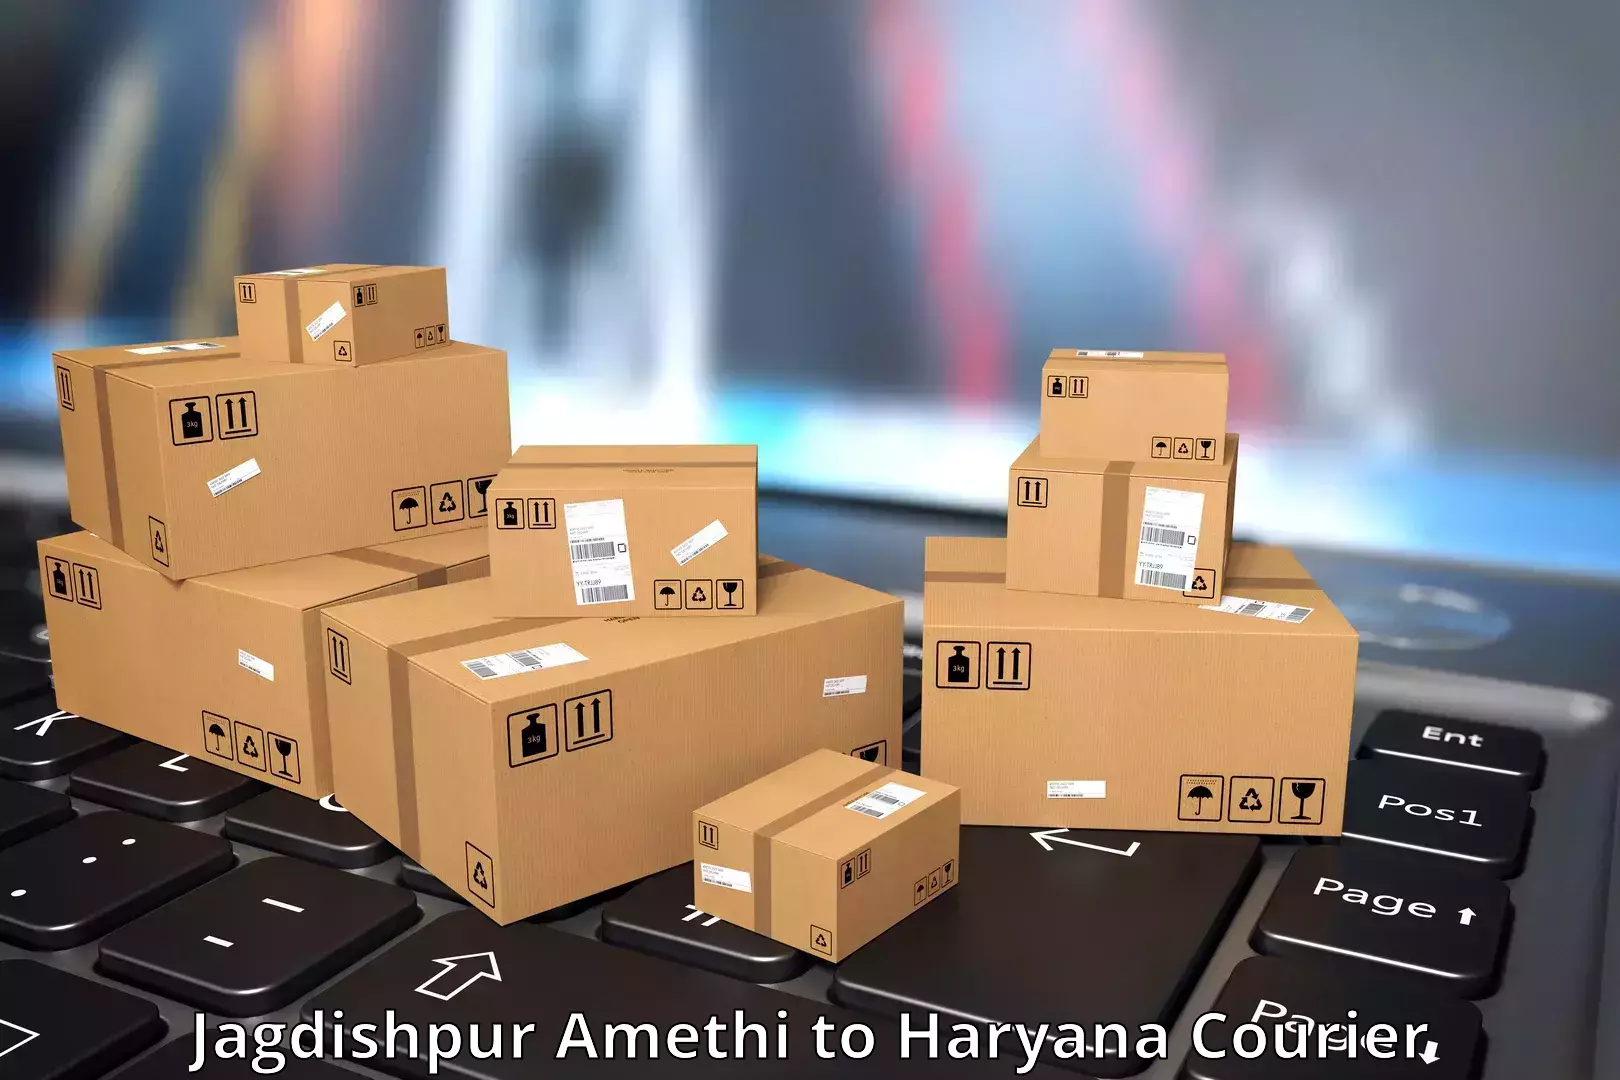 Cargo courier service Jagdishpur Amethi to Ambala